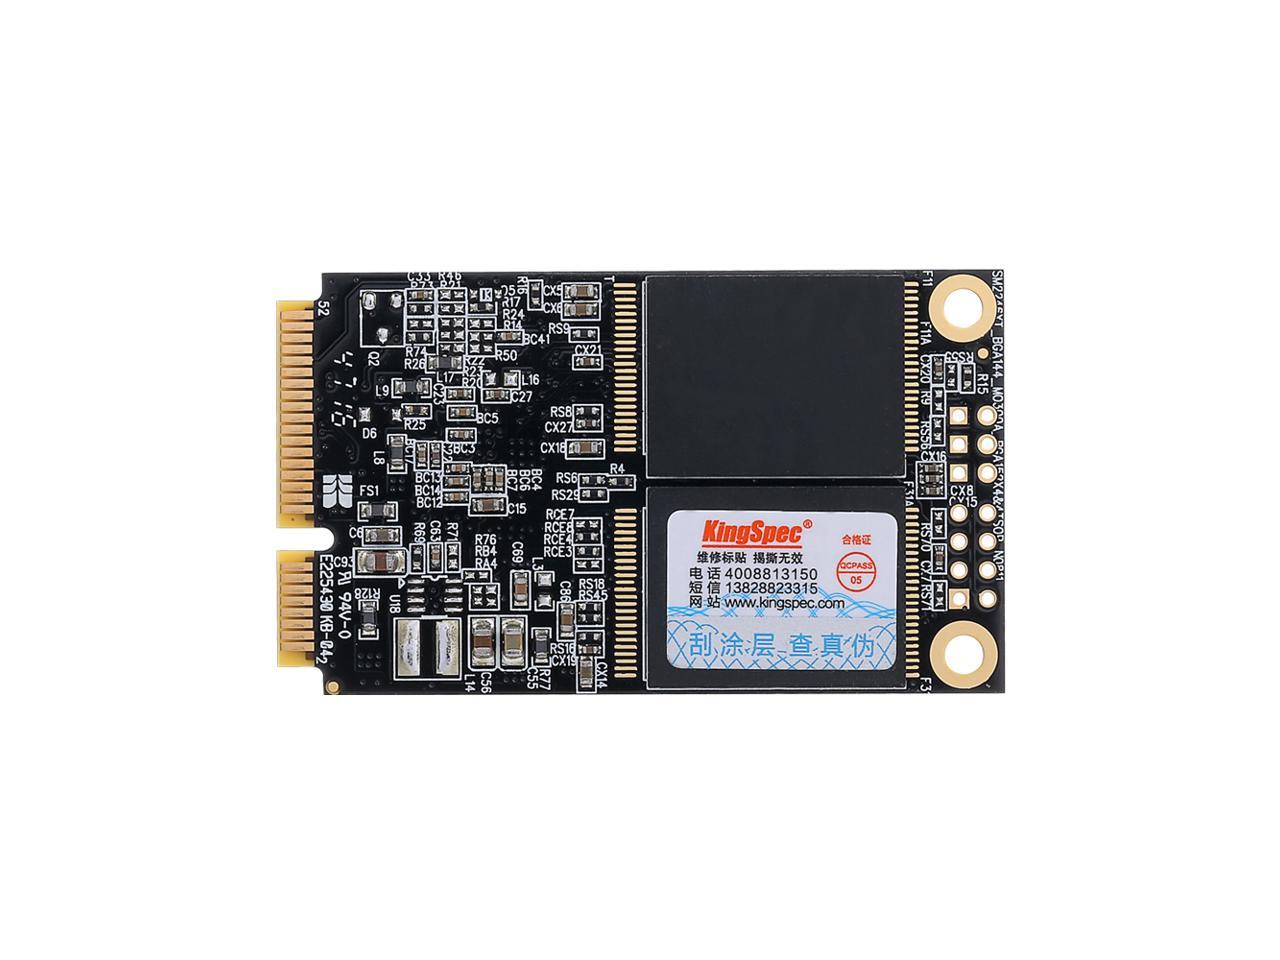 KingSpec 64GB mSATA MLC SSD (MT-64)